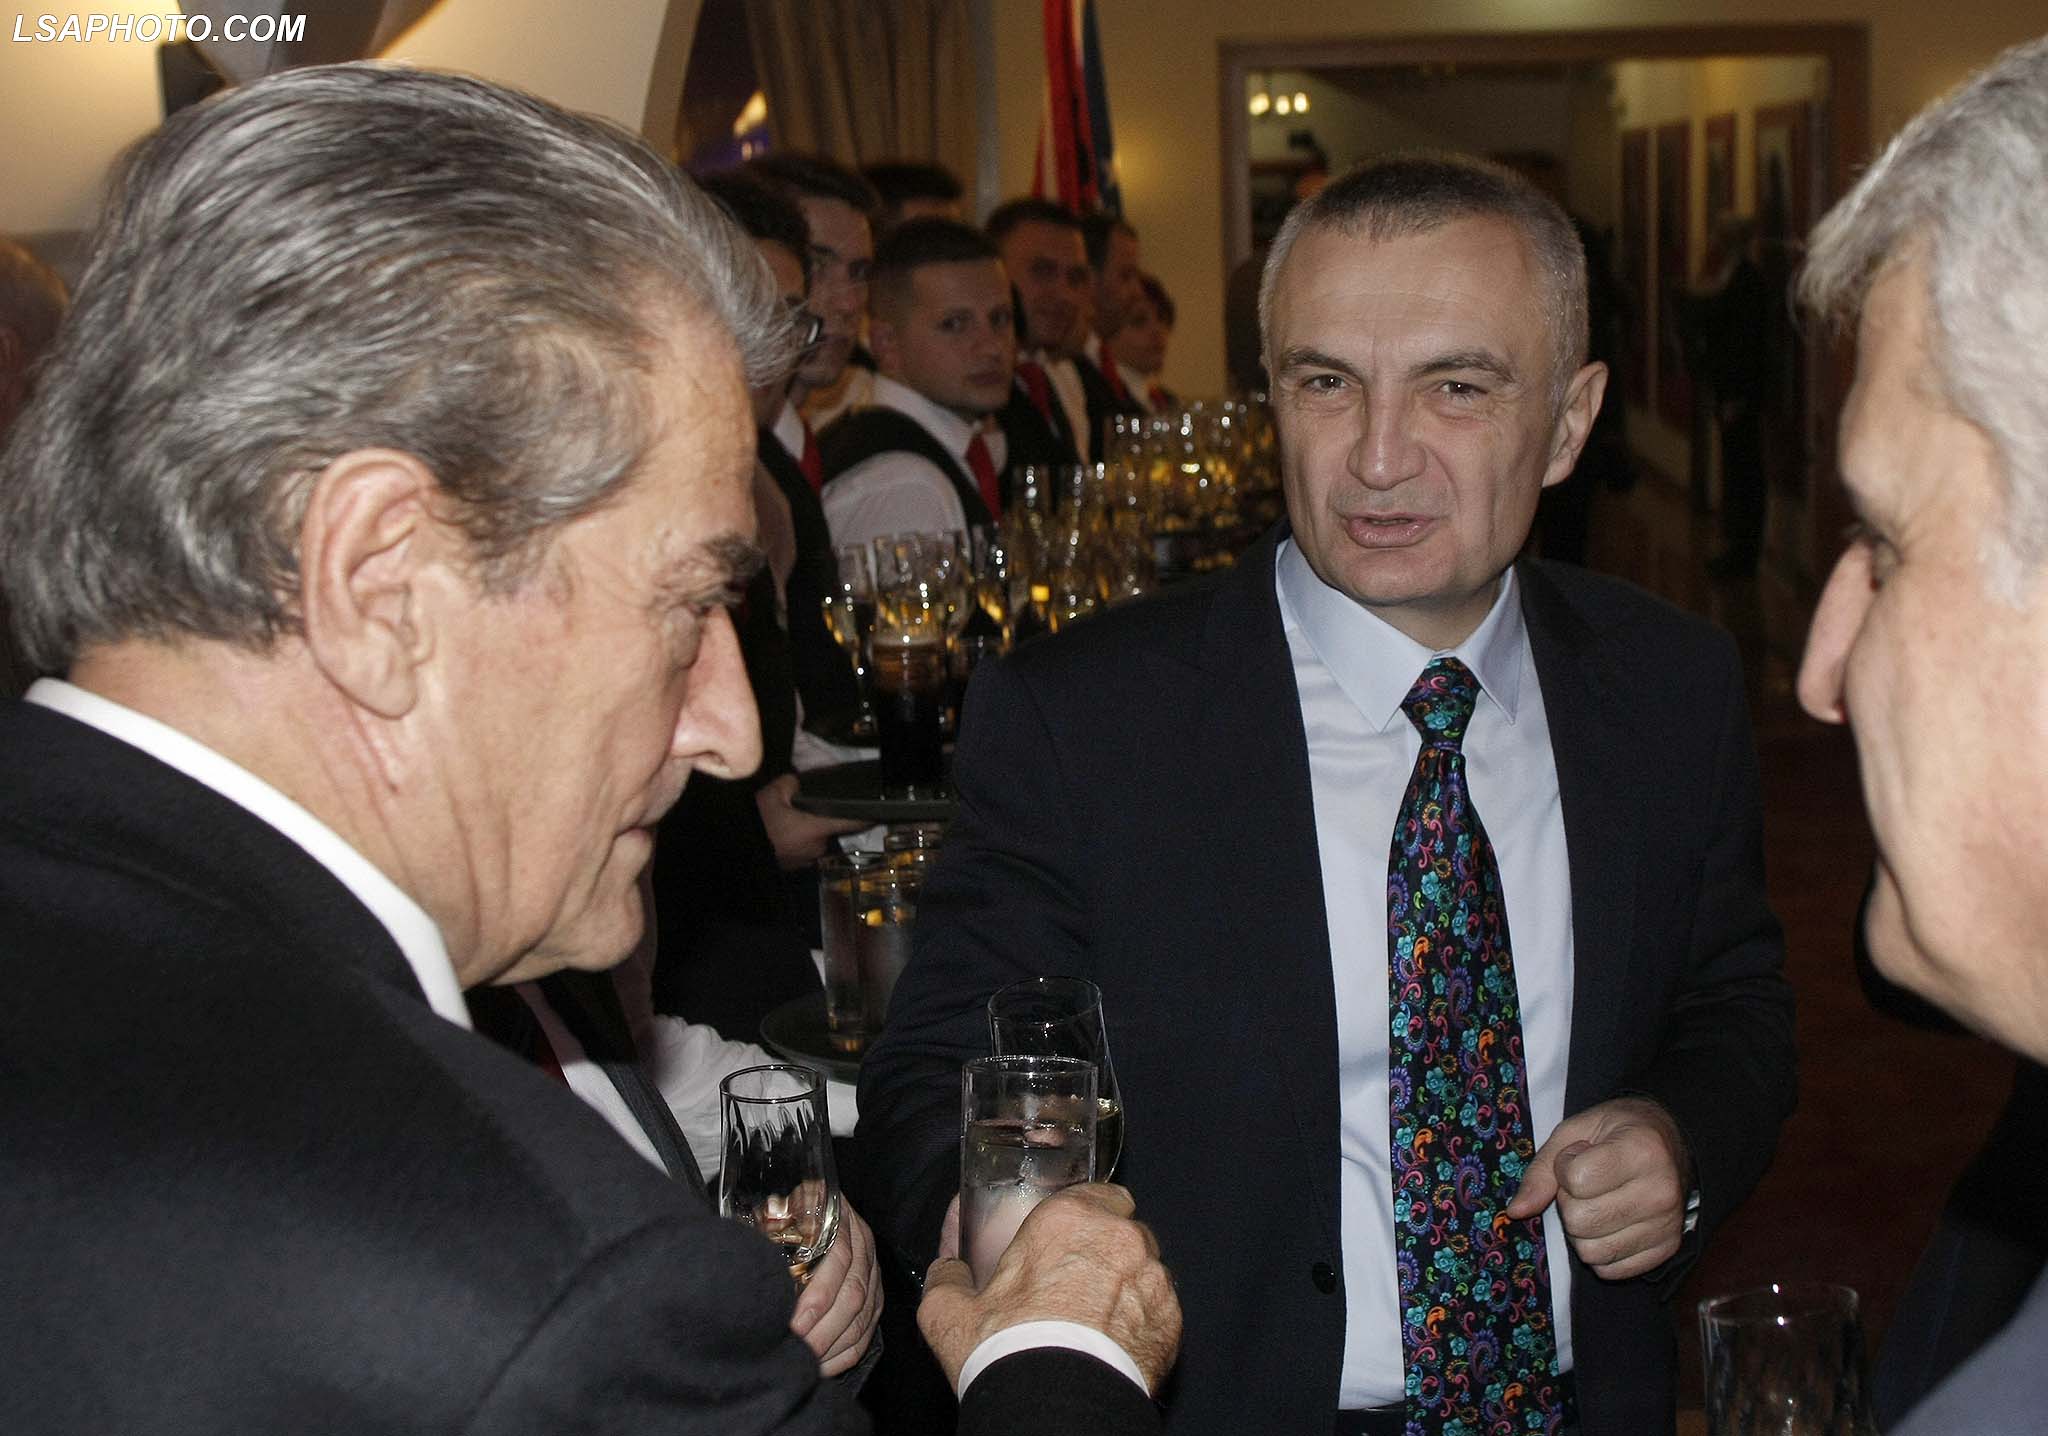 8 VJETORI I PAVARESISE SE KOSOVES - Ish Kryeministri, Sali Berisha, Kryetari i Kuvendit Ilir Meta dhe deputeti i PS, Pandeli Majko, gjate nje pritje festive me personalitete shteterore me rastin e 8 vjetorit te festes se Pavaresise se Kosoves./r/n/r/n8 ANNIVERSARY OF INDEPENDENCE OF KOSOVO - Former Prime Minister Sali Berisha, Parliament Speaker Ilir Meta and lawmaker, Pandeli Majko, during a festive reception with state dignitaries on the occasion of the 8th anniversary of the feast of the Independence of Kosovo.